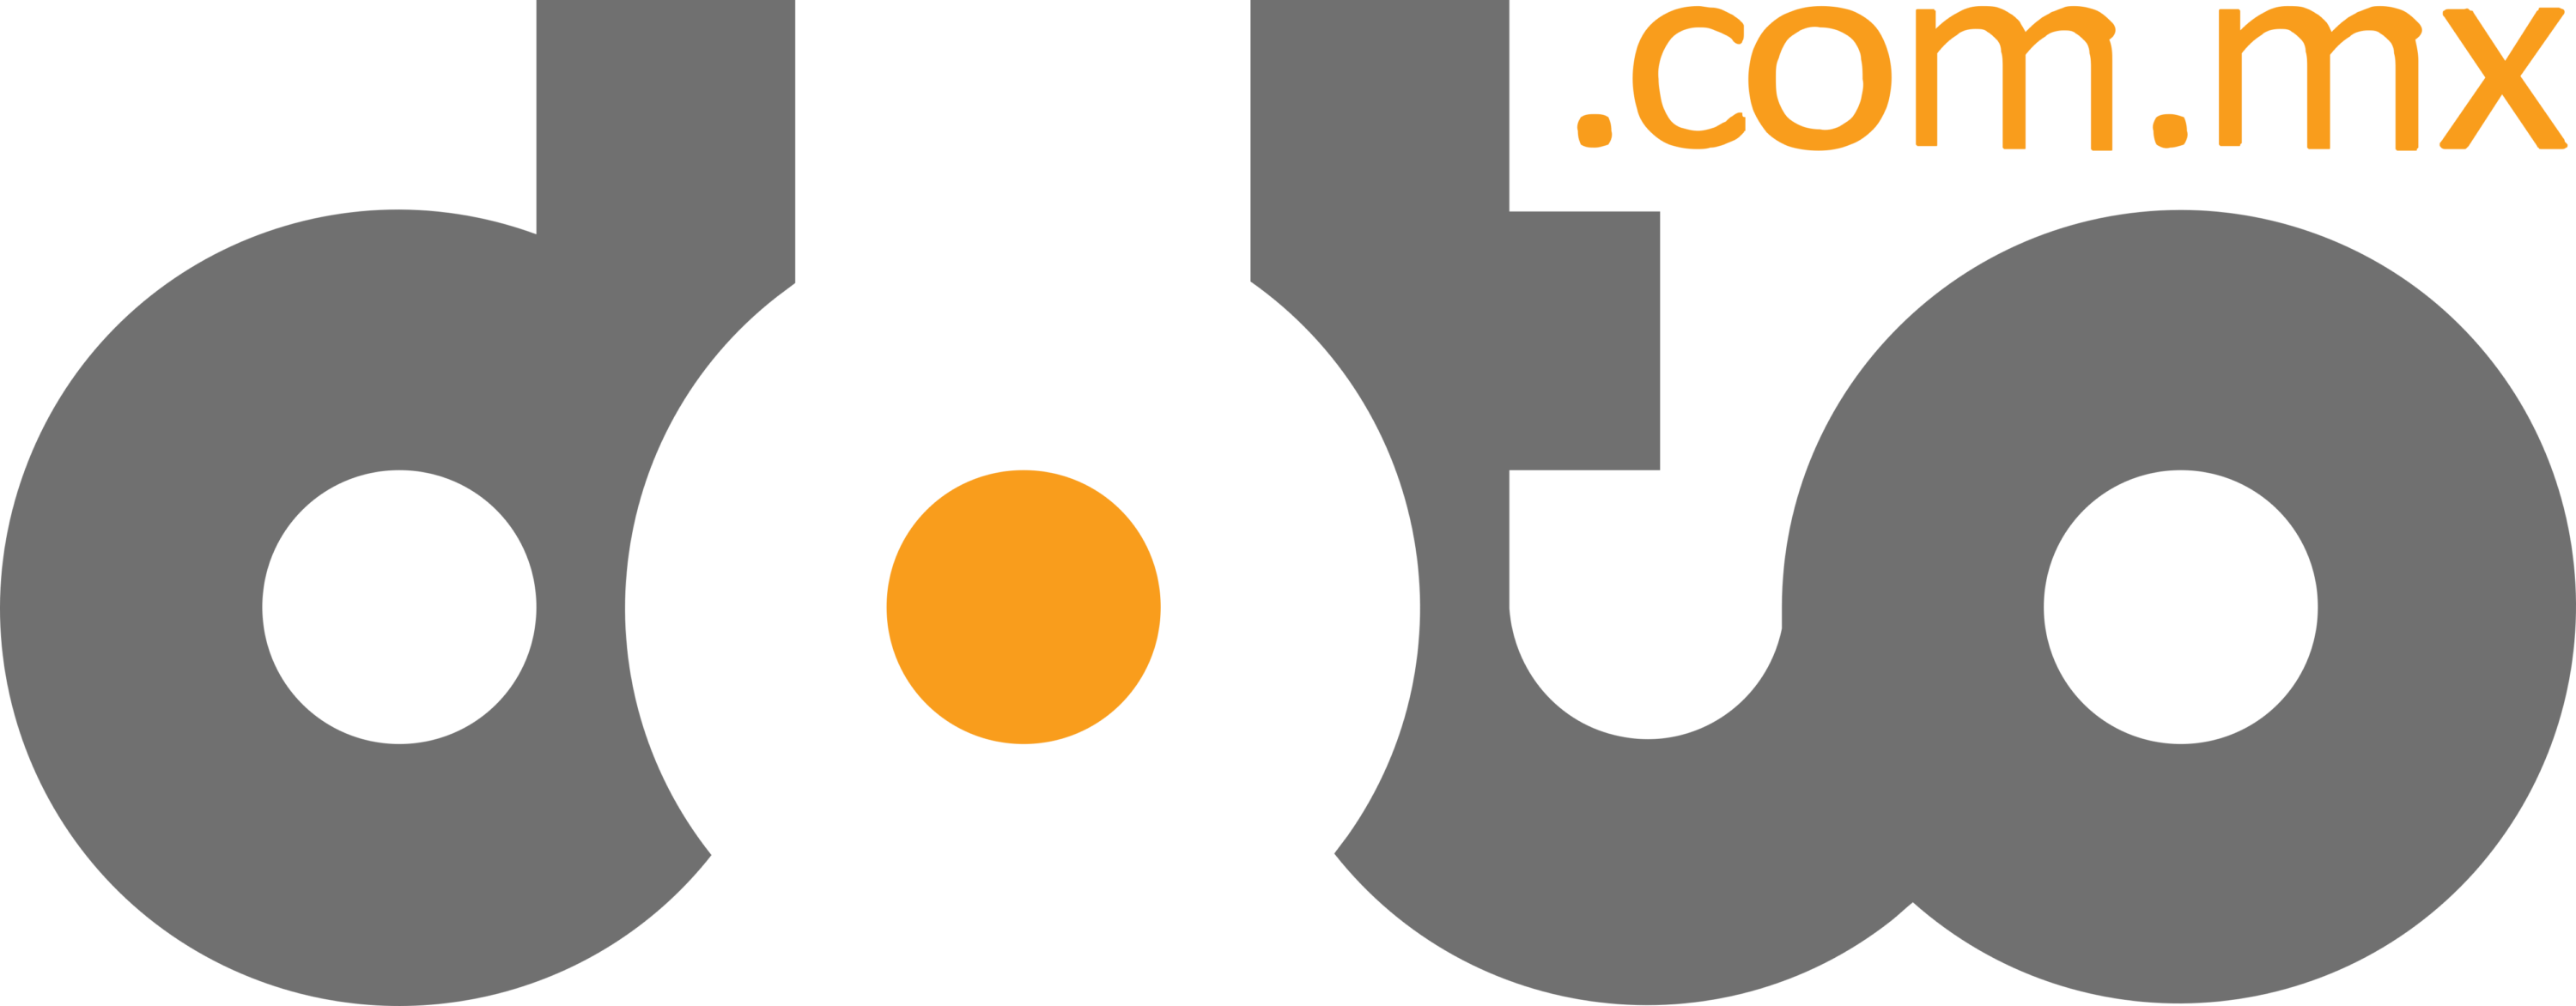 Doto Logo